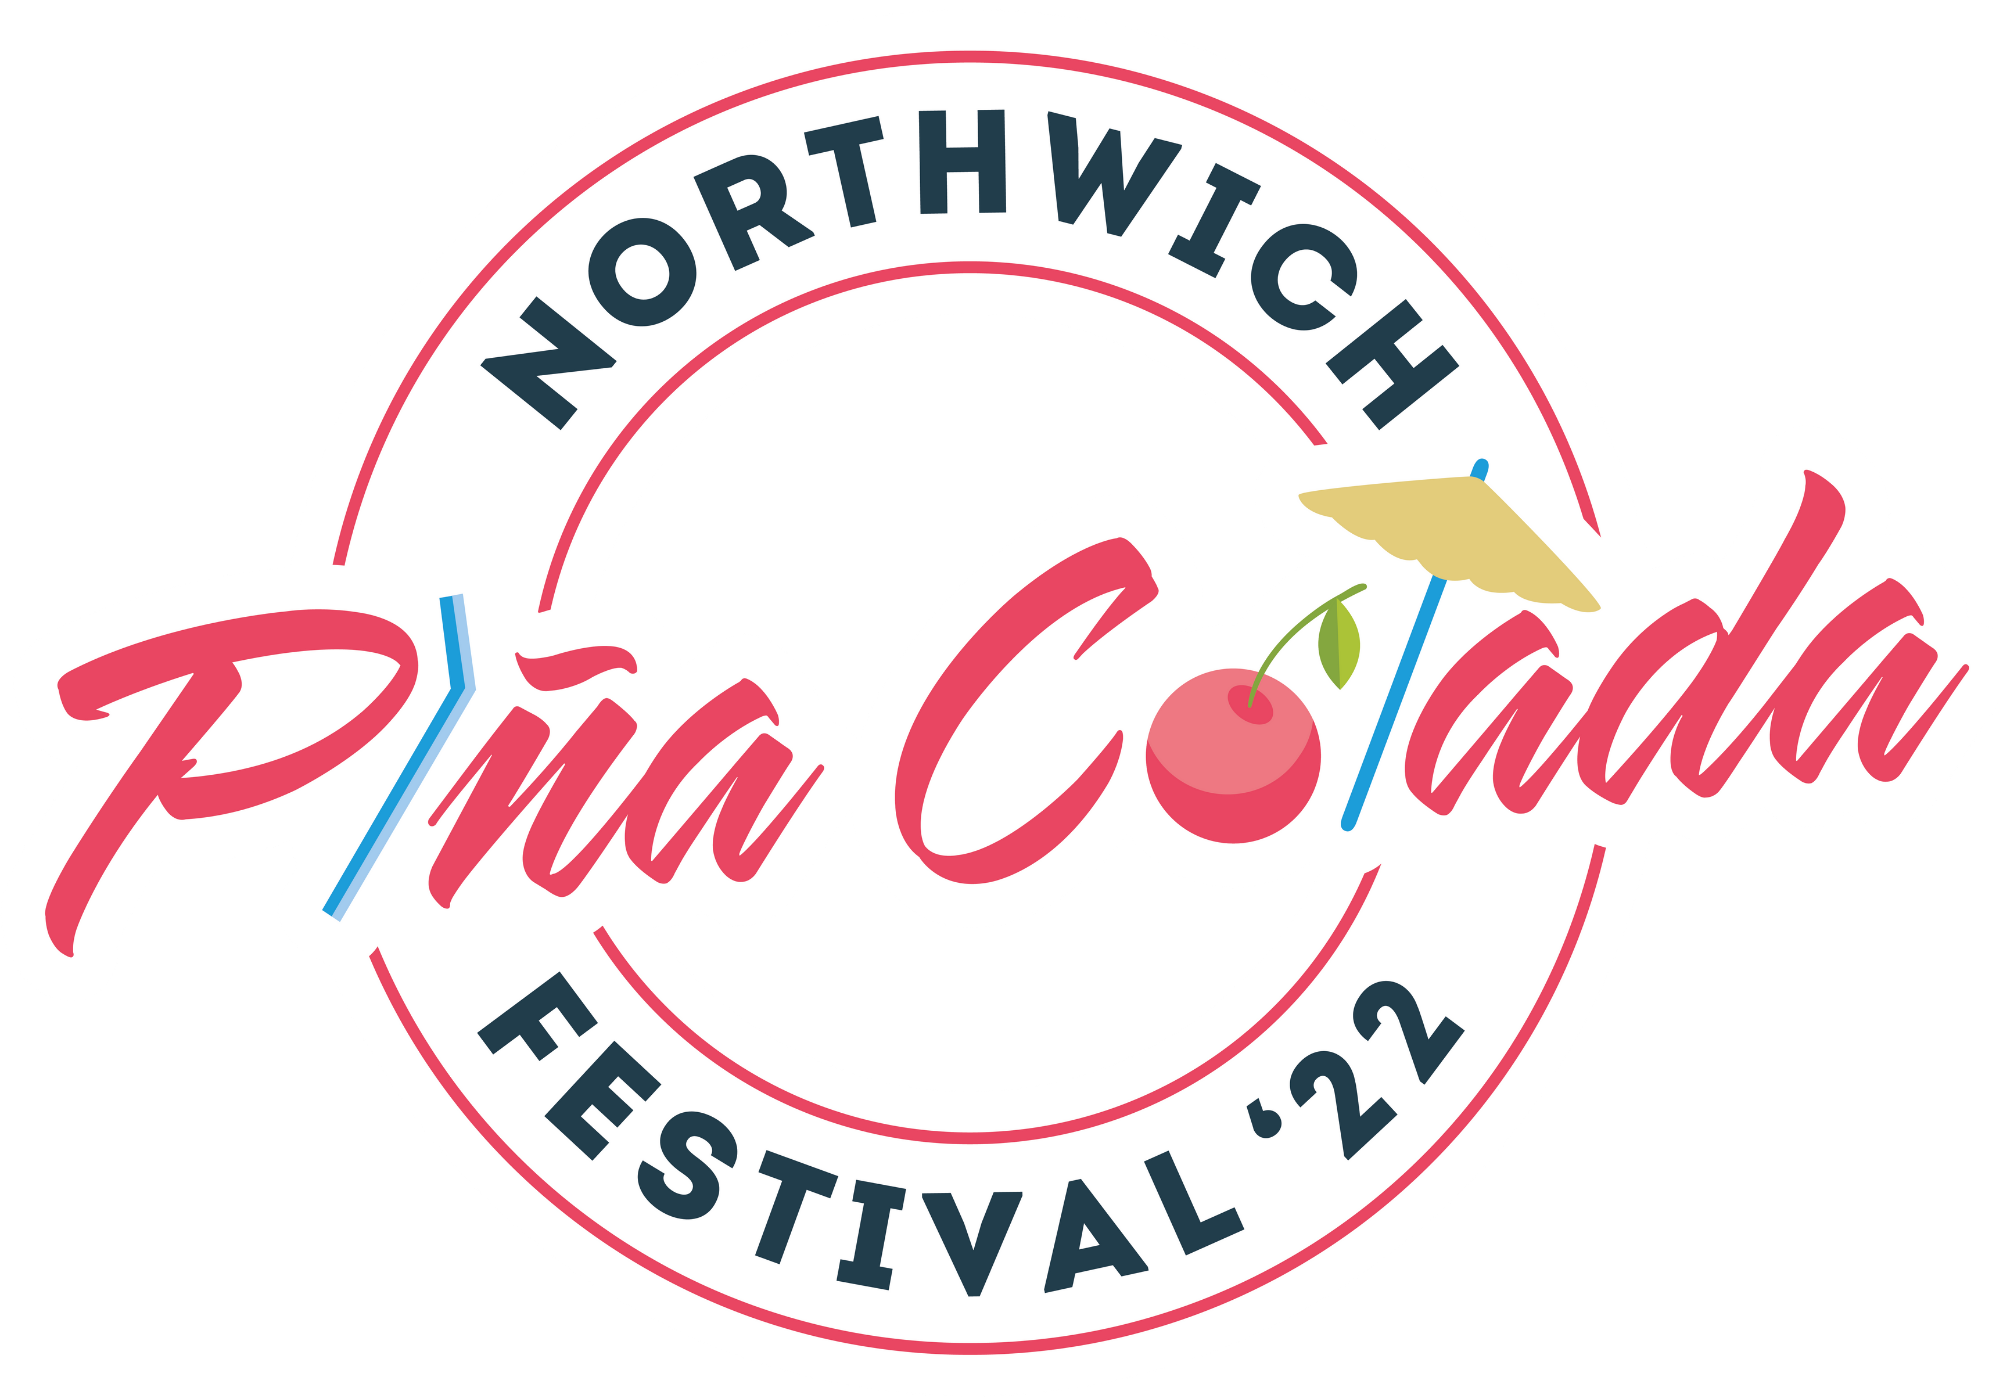 Northwich Pina Colada Festival